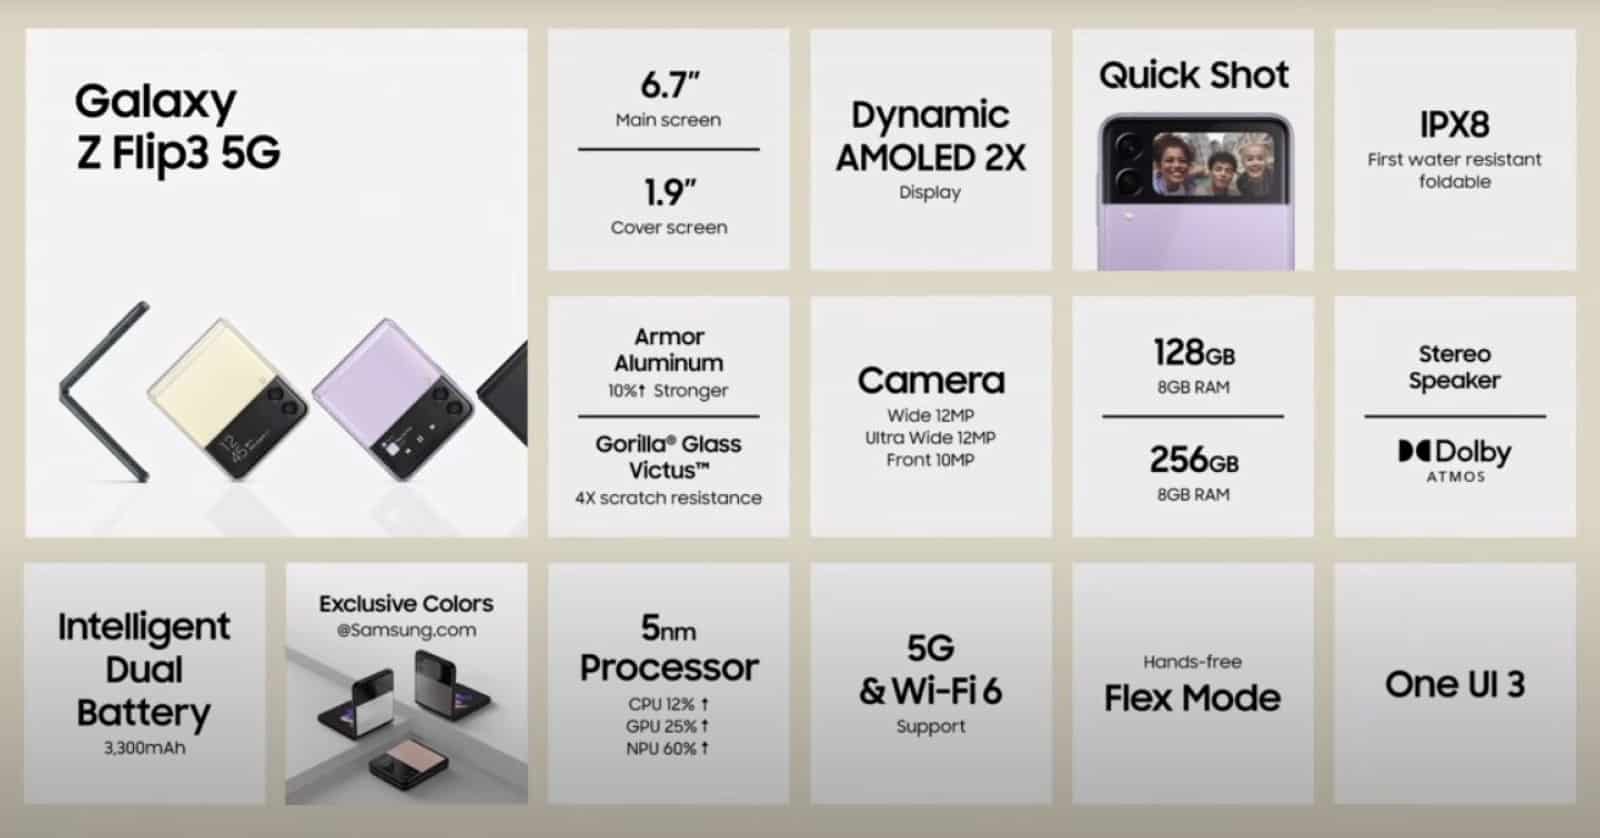 diapositiva de Samsung Unpacked que muestra las especificaciones y características del Galaxy Z Flip 3